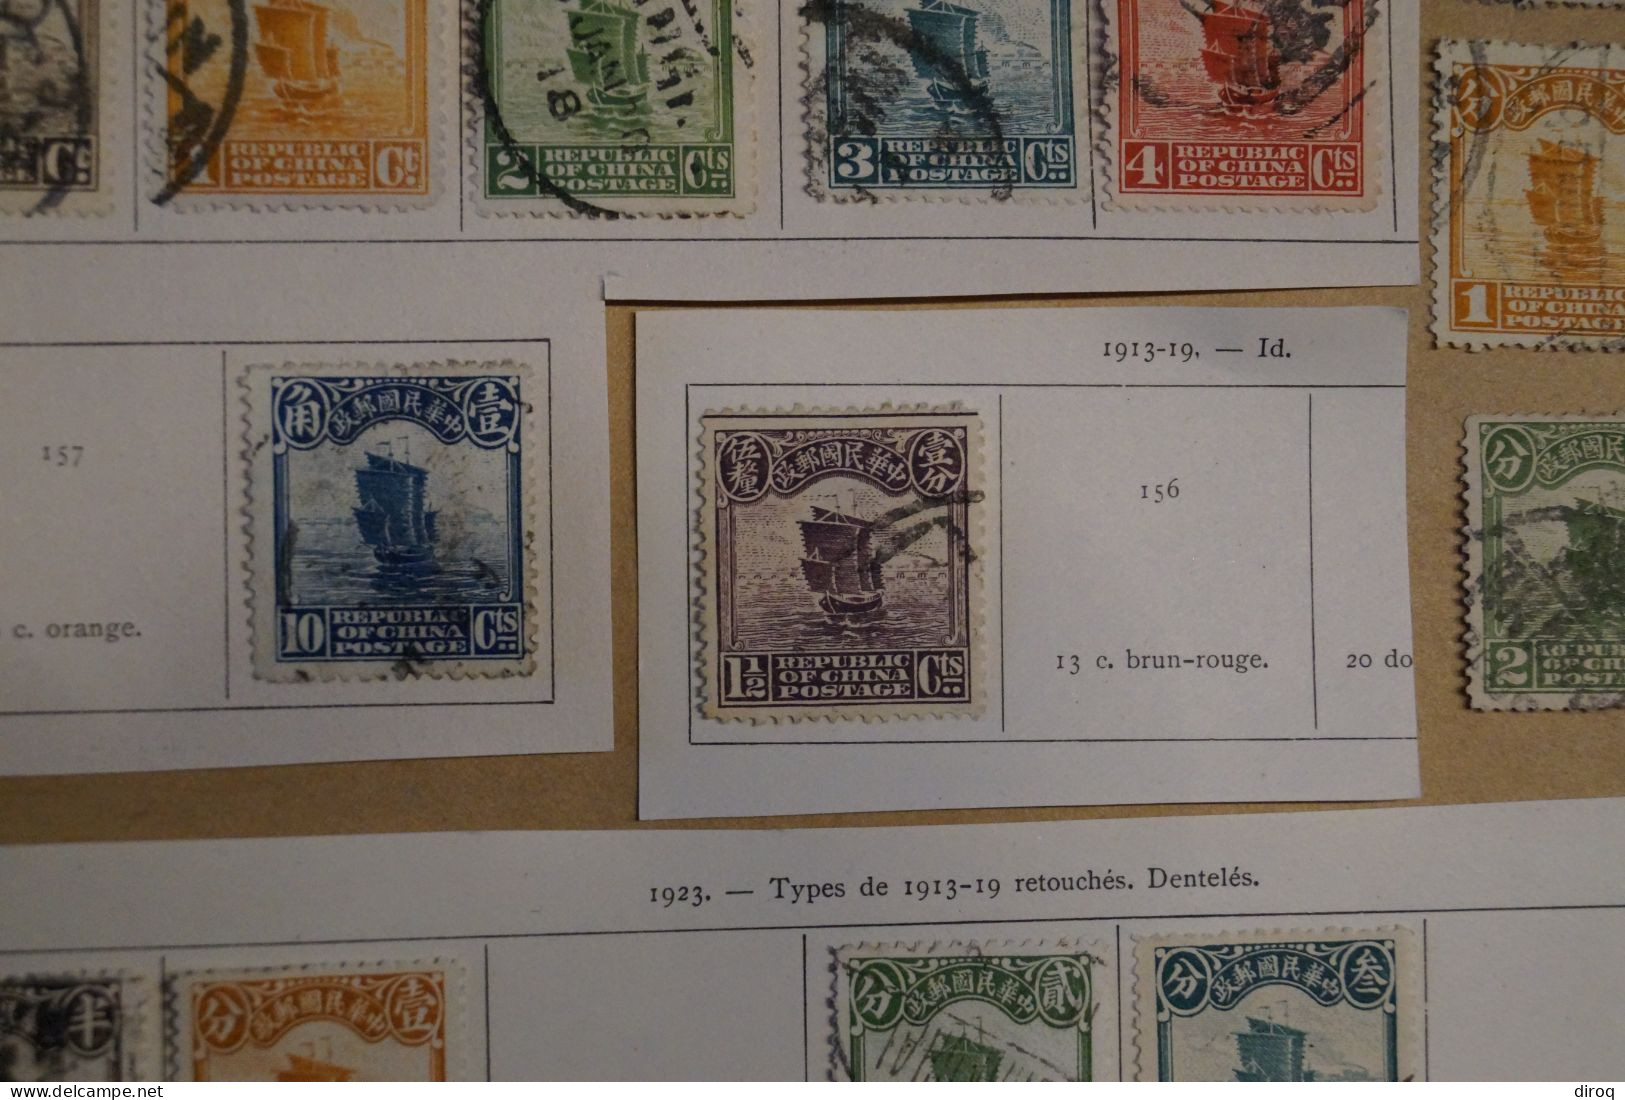 Chine,Chines,lot de 48 timbres oblitérés,1913 - 1923,certains avec surcharges, pour collection,collector